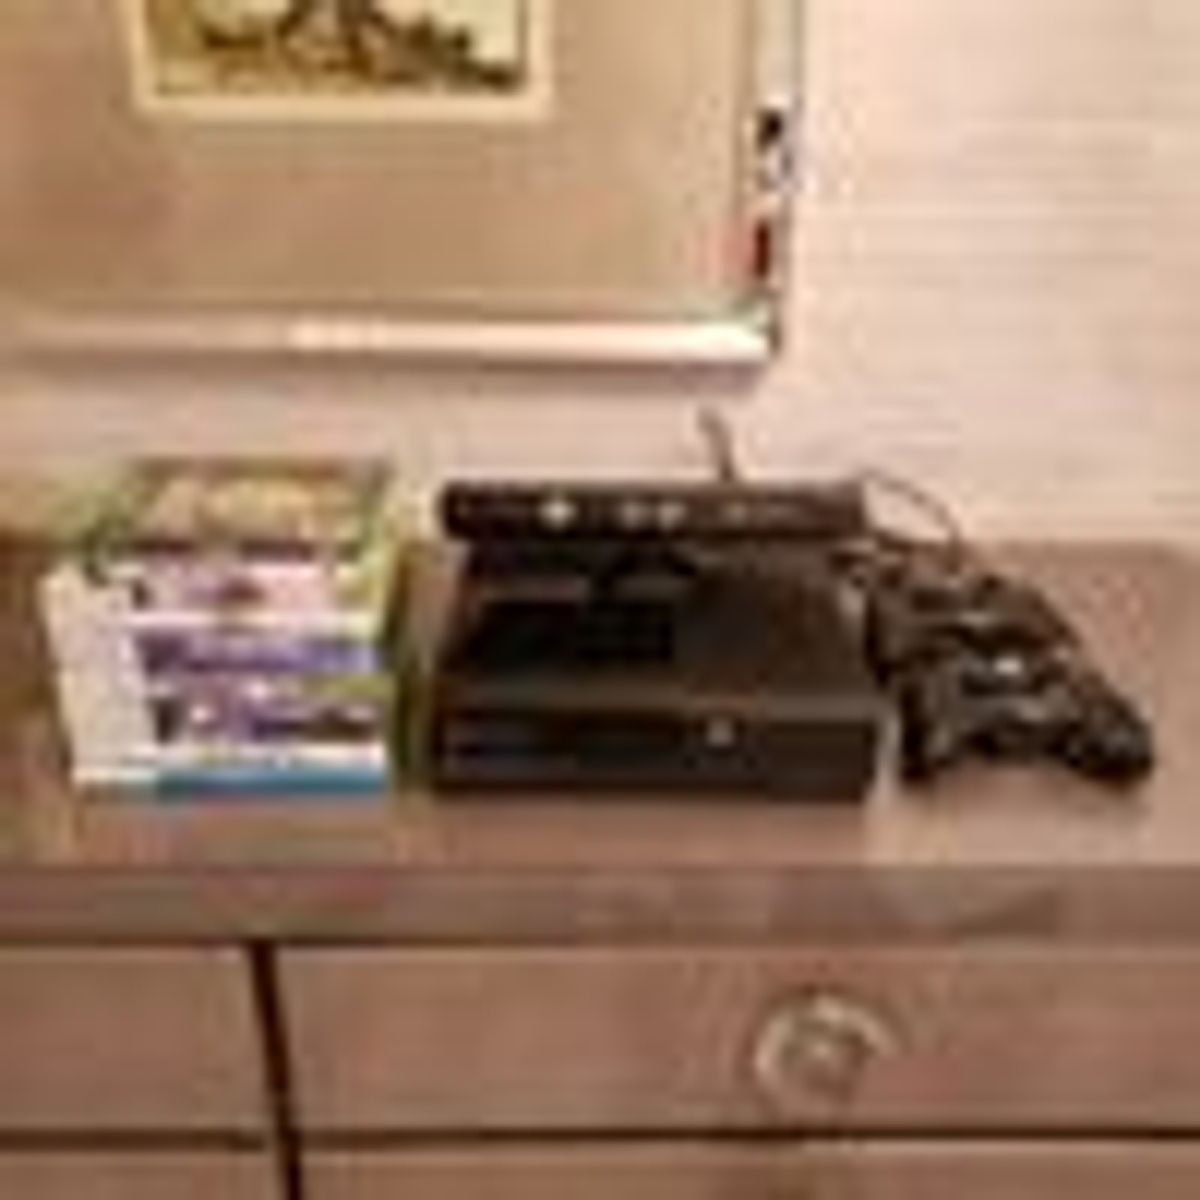 Microsoft Xbox 360 + Kinect e 3 Jogos E 4gb Standard Cor Preto em